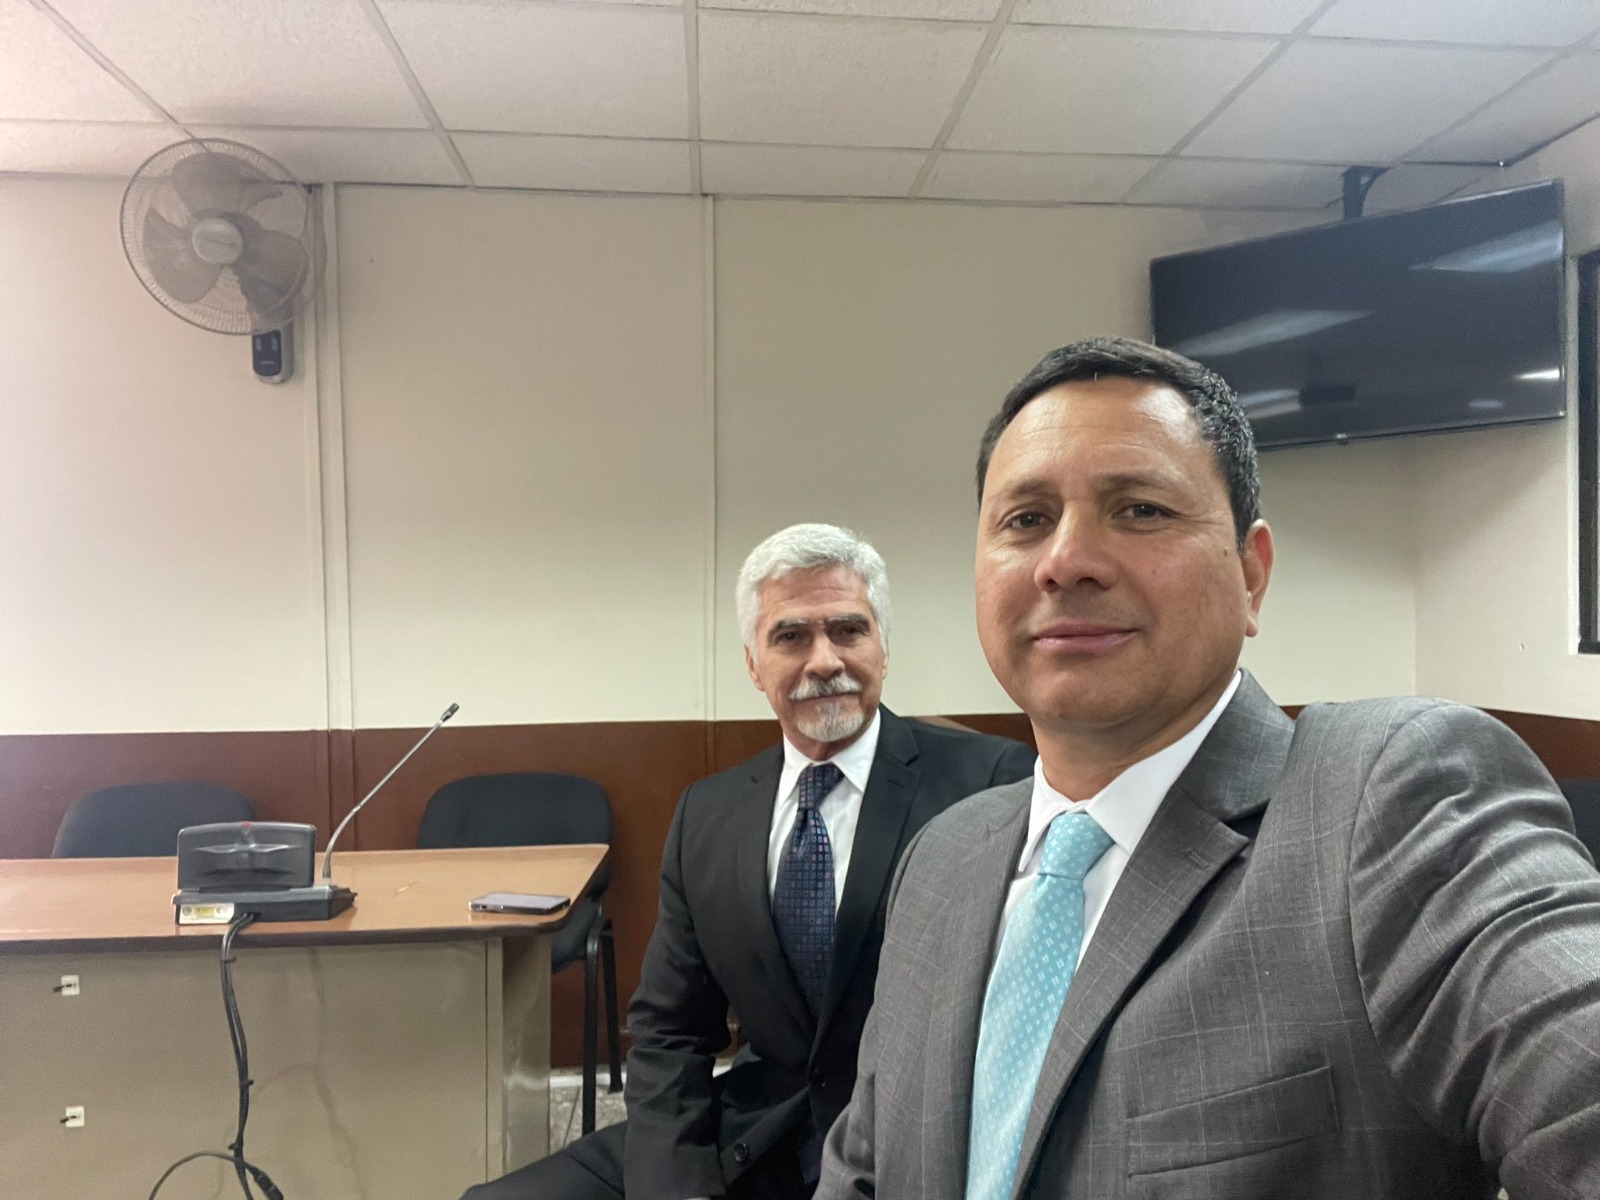 El abogado Raúl Falla Ovalle de la Fundación contra el Terrorismo (FCT) junto a Ricardo Méndez-Ruiz, quien es presidente de dicha organización.